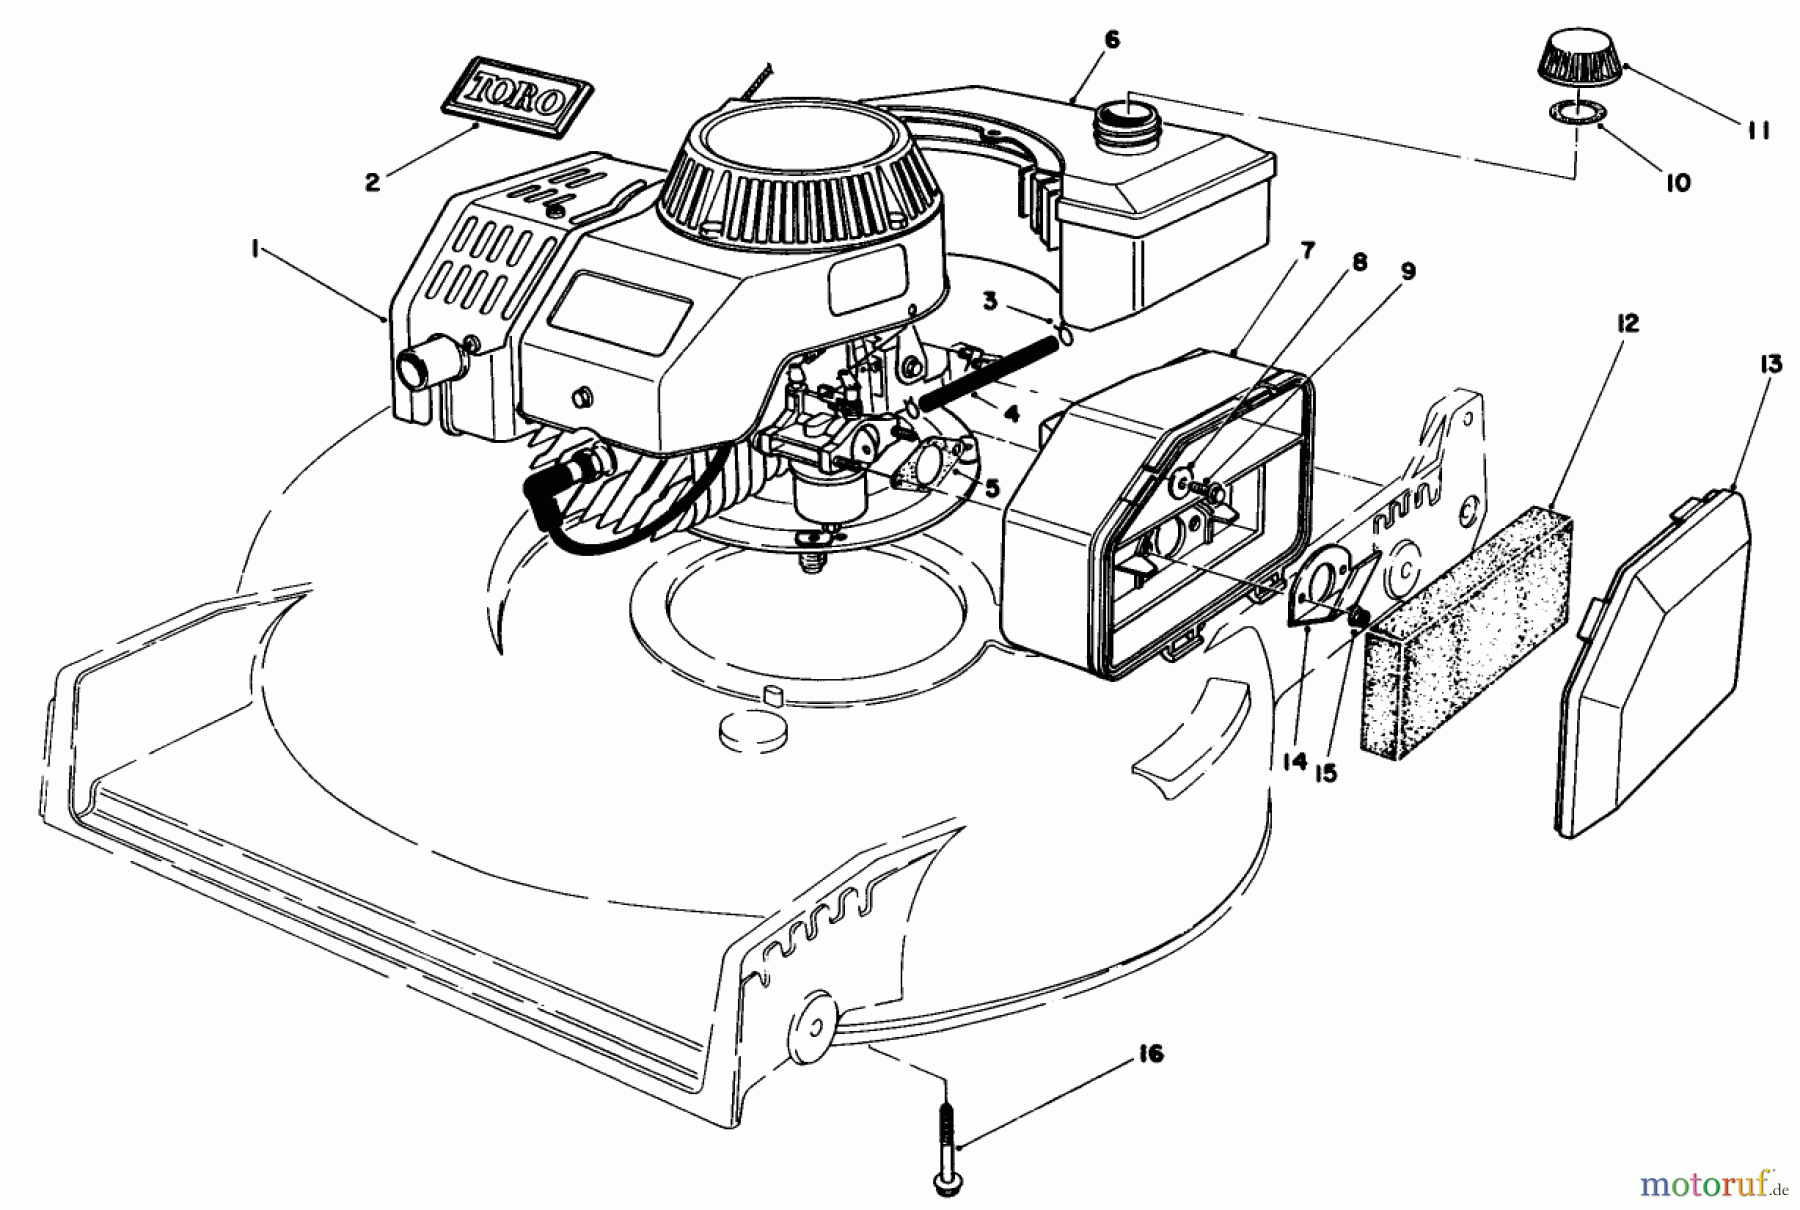  Toro Neu Mowers, Walk-Behind Seite 1 20584 - Toro Lawnmower, 1985 (5000001-4999999) ENGINE ASSEMBLY